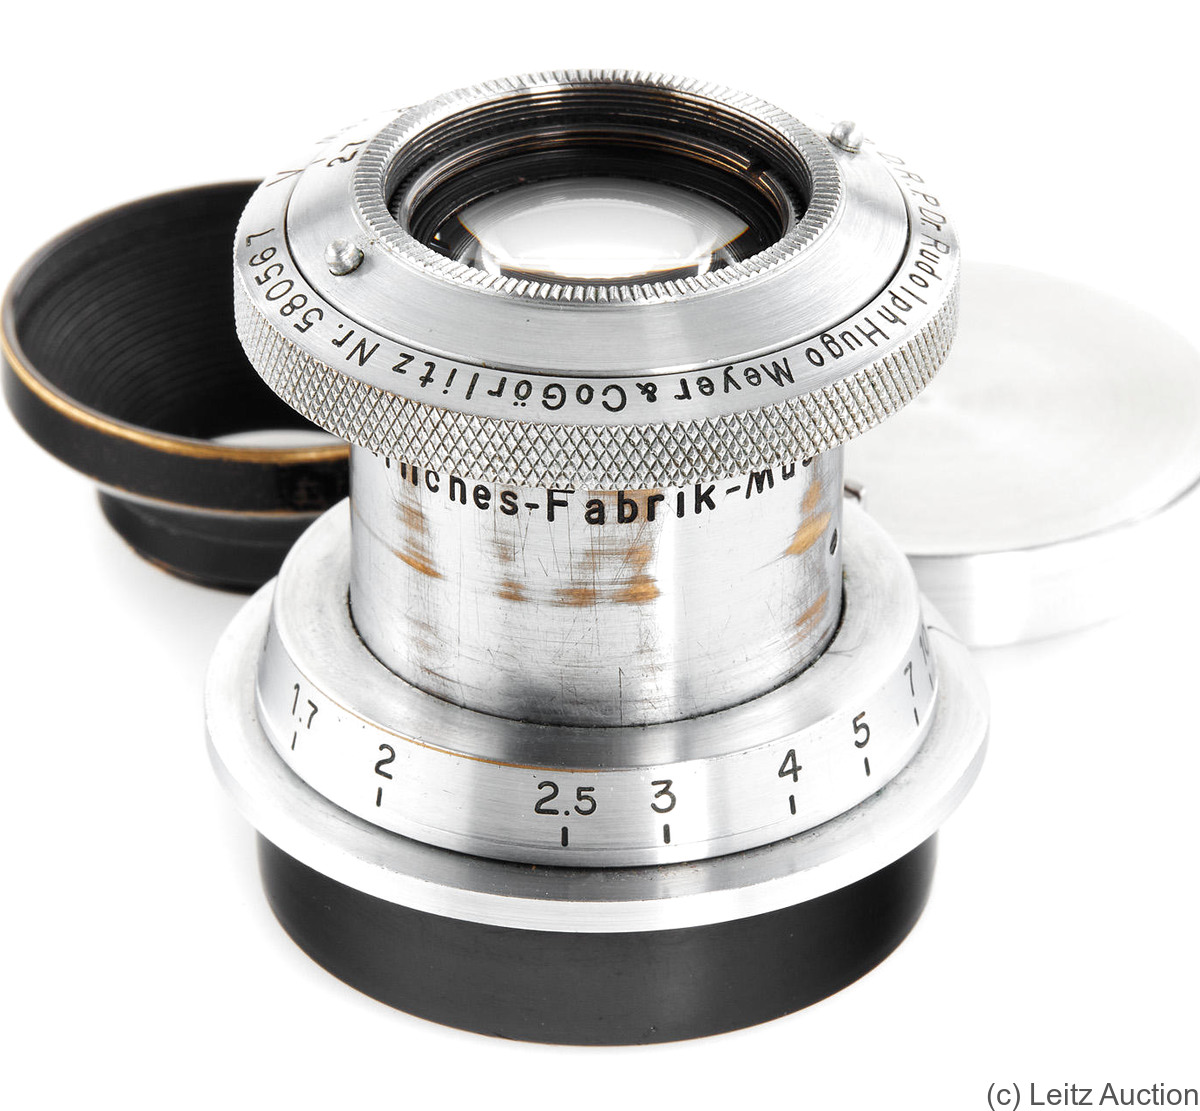 Meyer, Hugo: 50mm (5cm) f2.7 Makro Plasmat (M39, chrome) camera